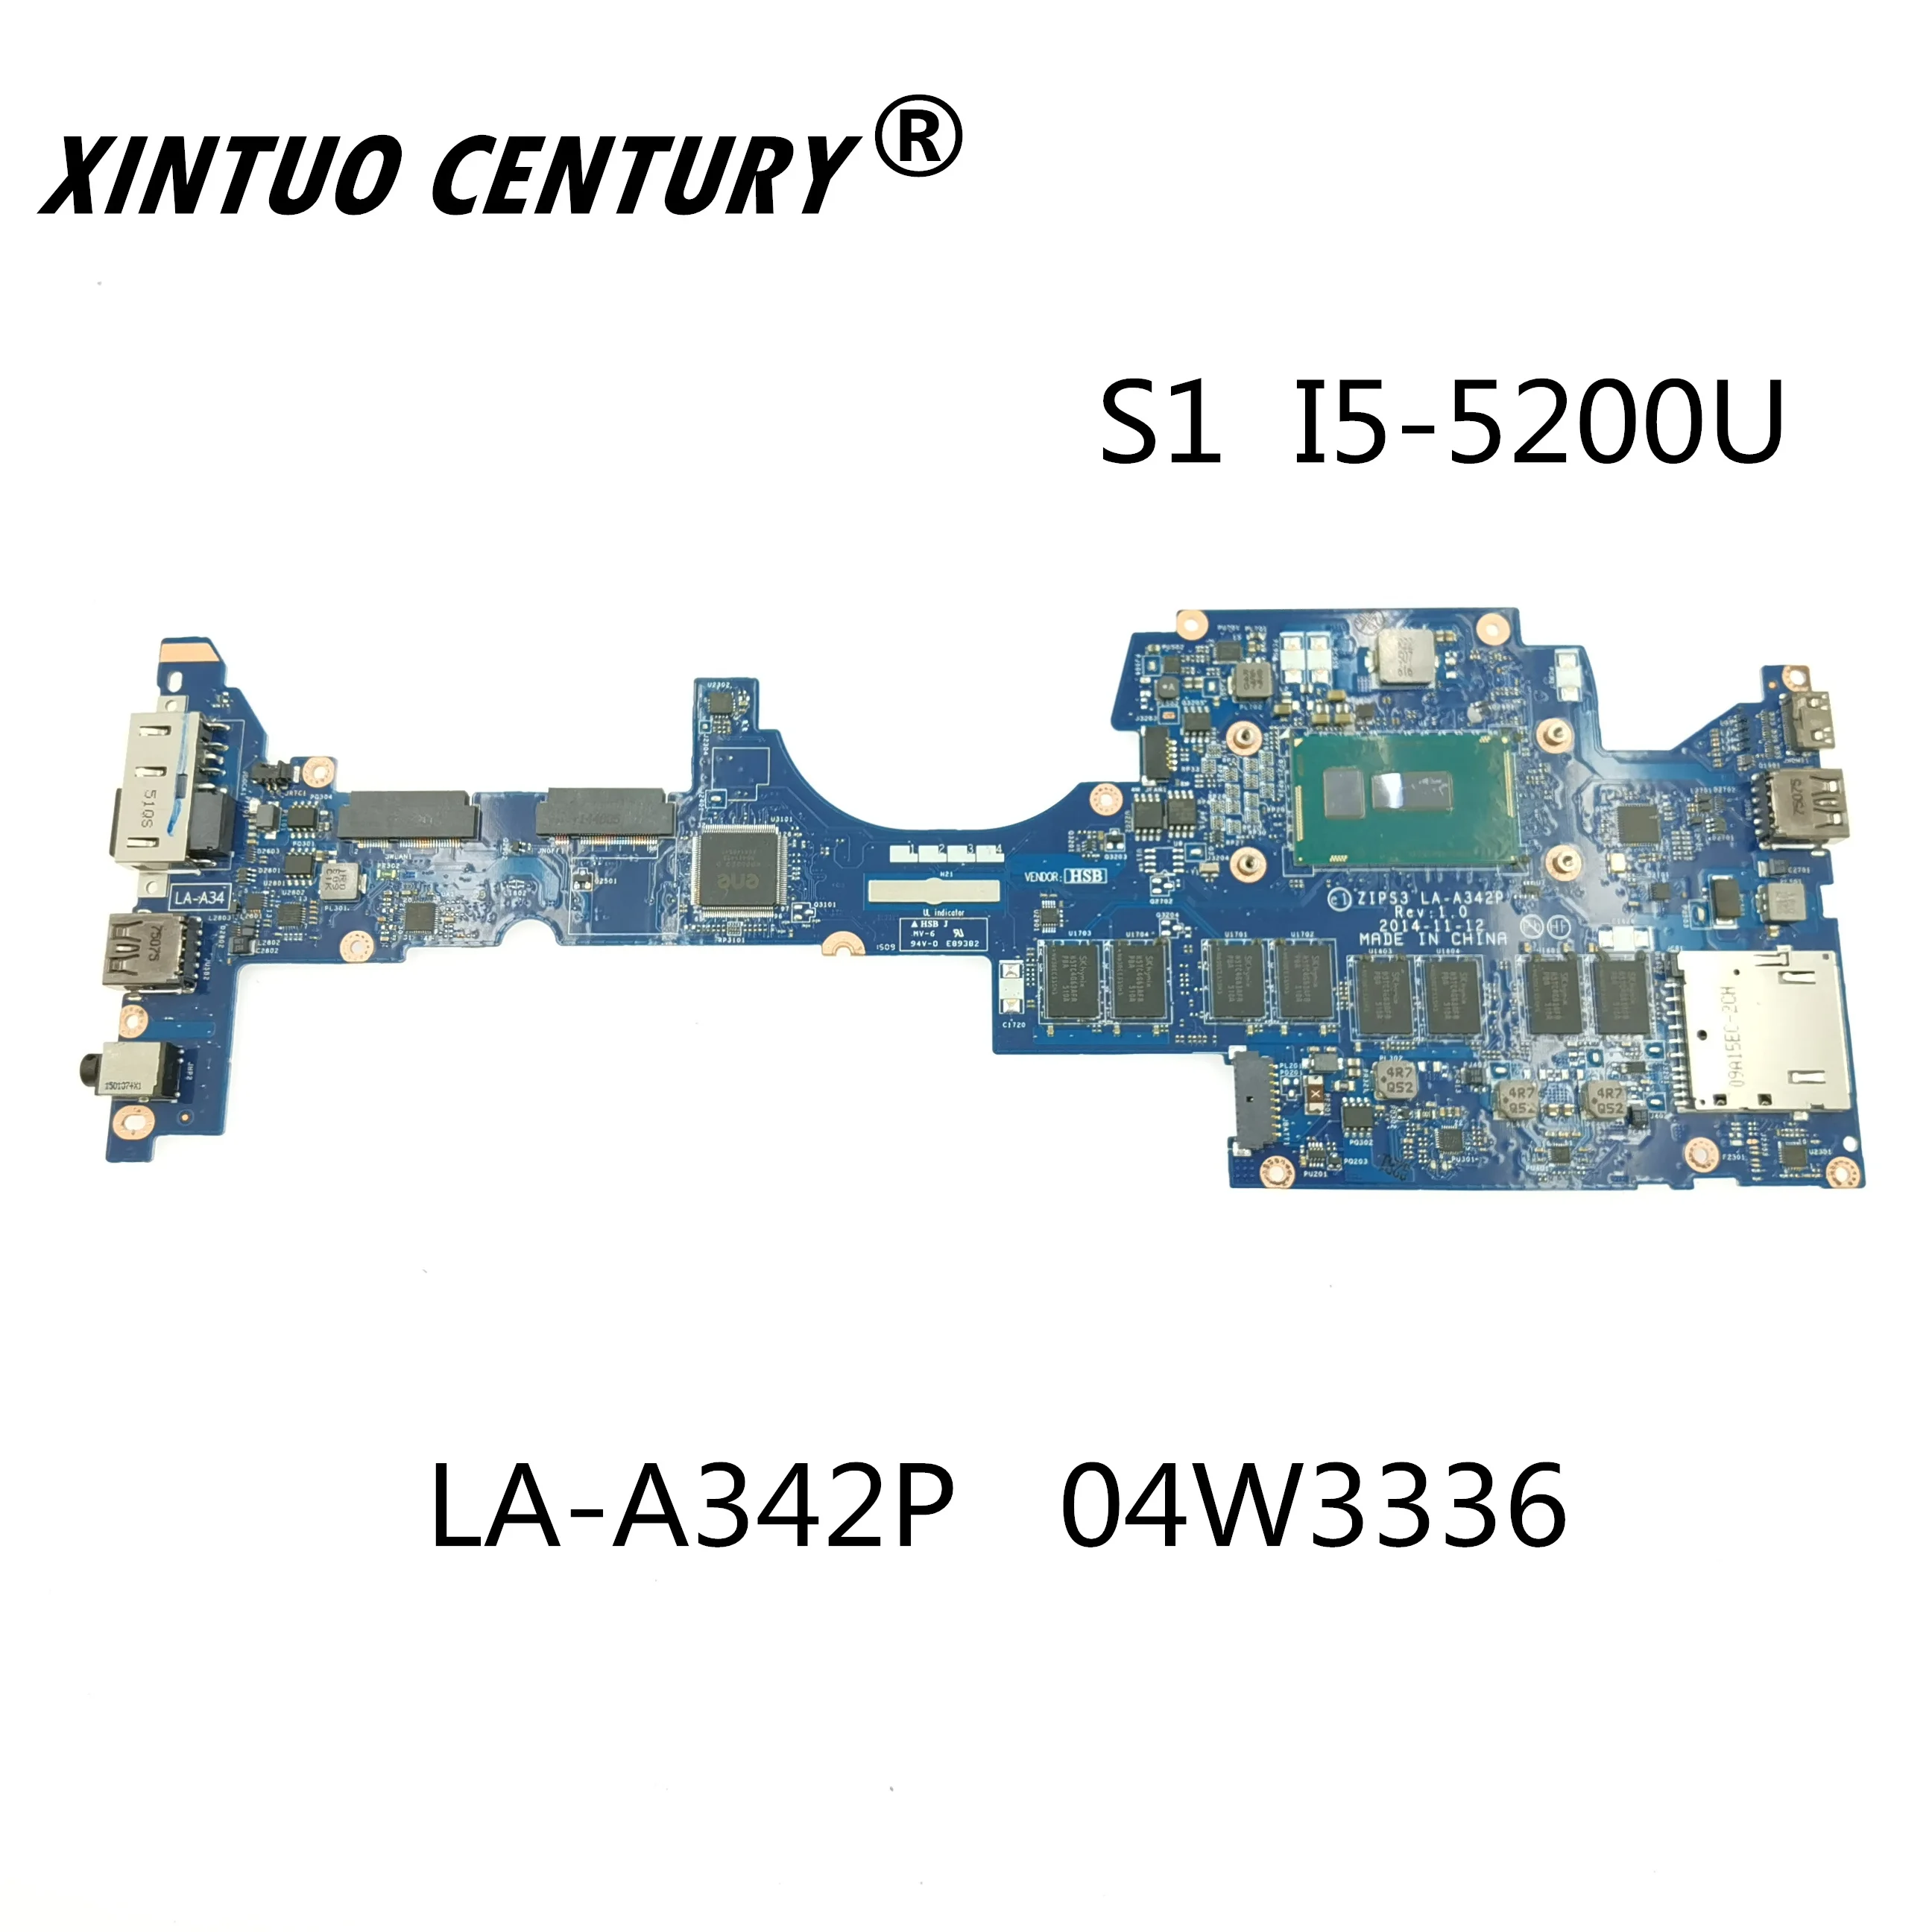 

For Lenovo YOGA S1 computador portátil LA-A342P FRU: 04w3336 SR23Y I5-5200U CPU 4GB RAM 100% test